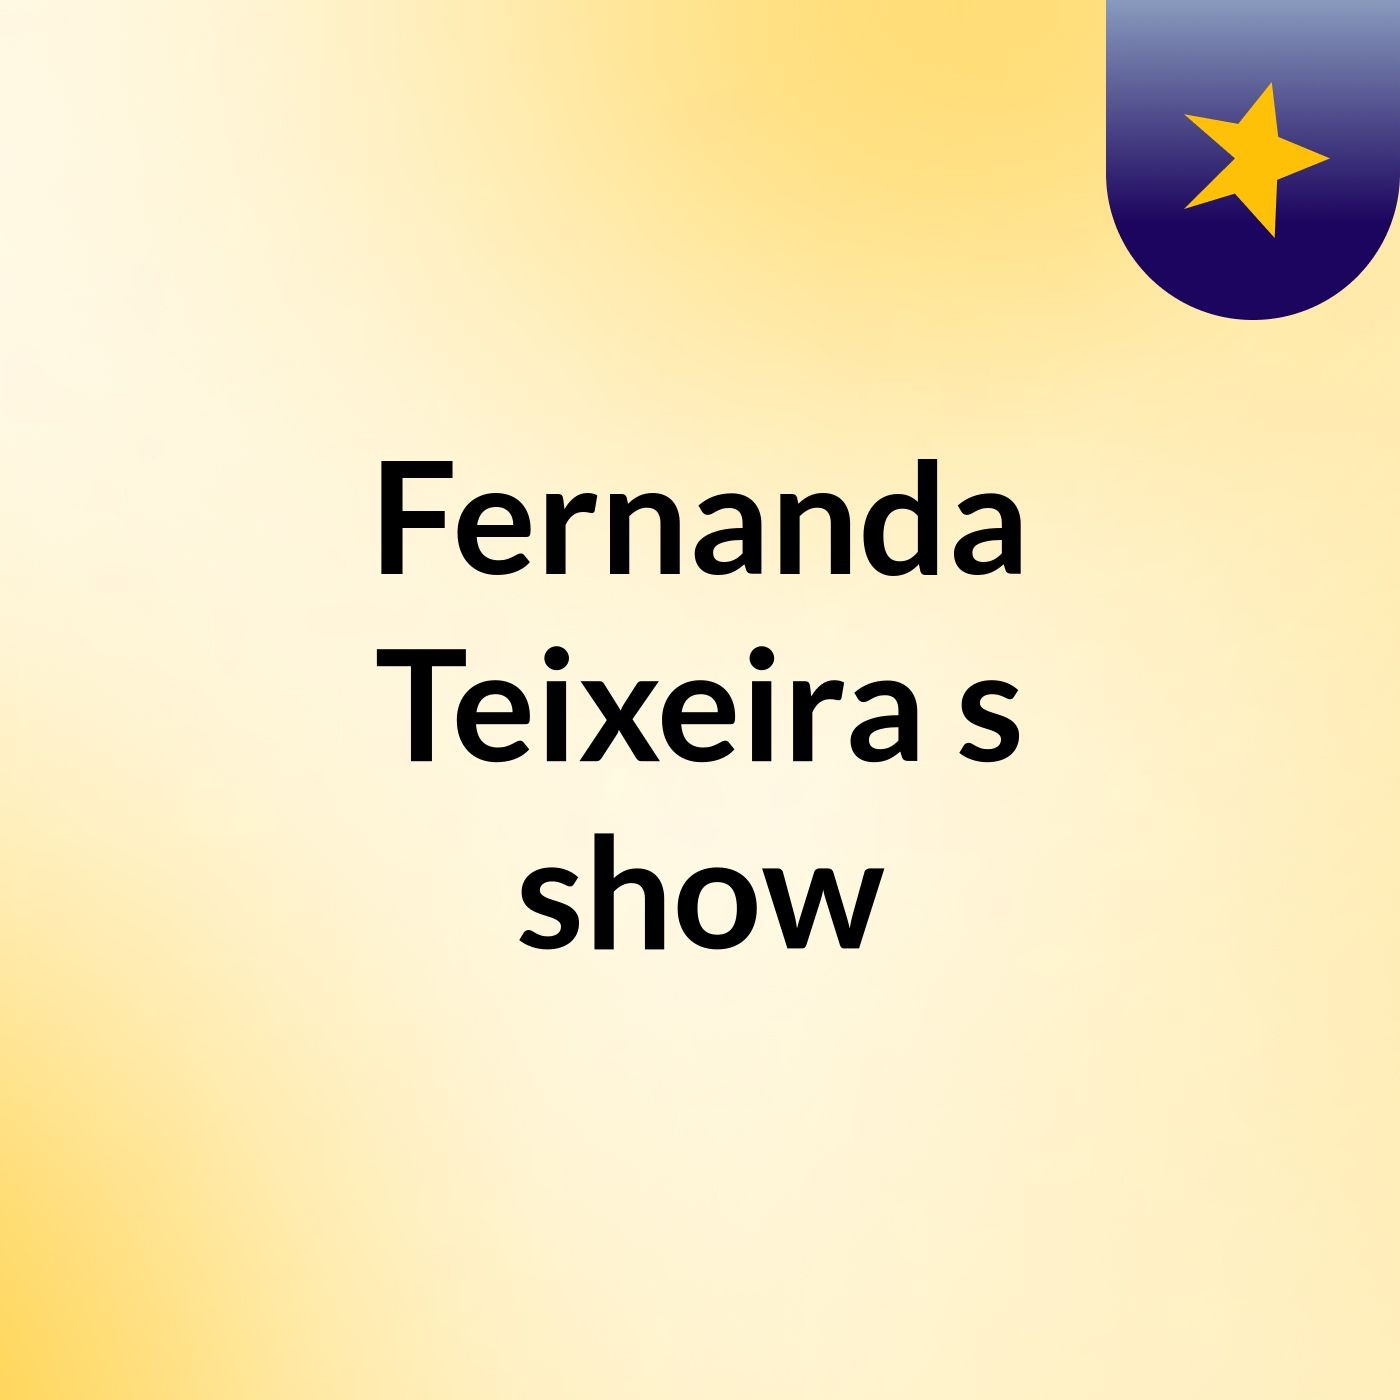 Fernanda Teixeira's show